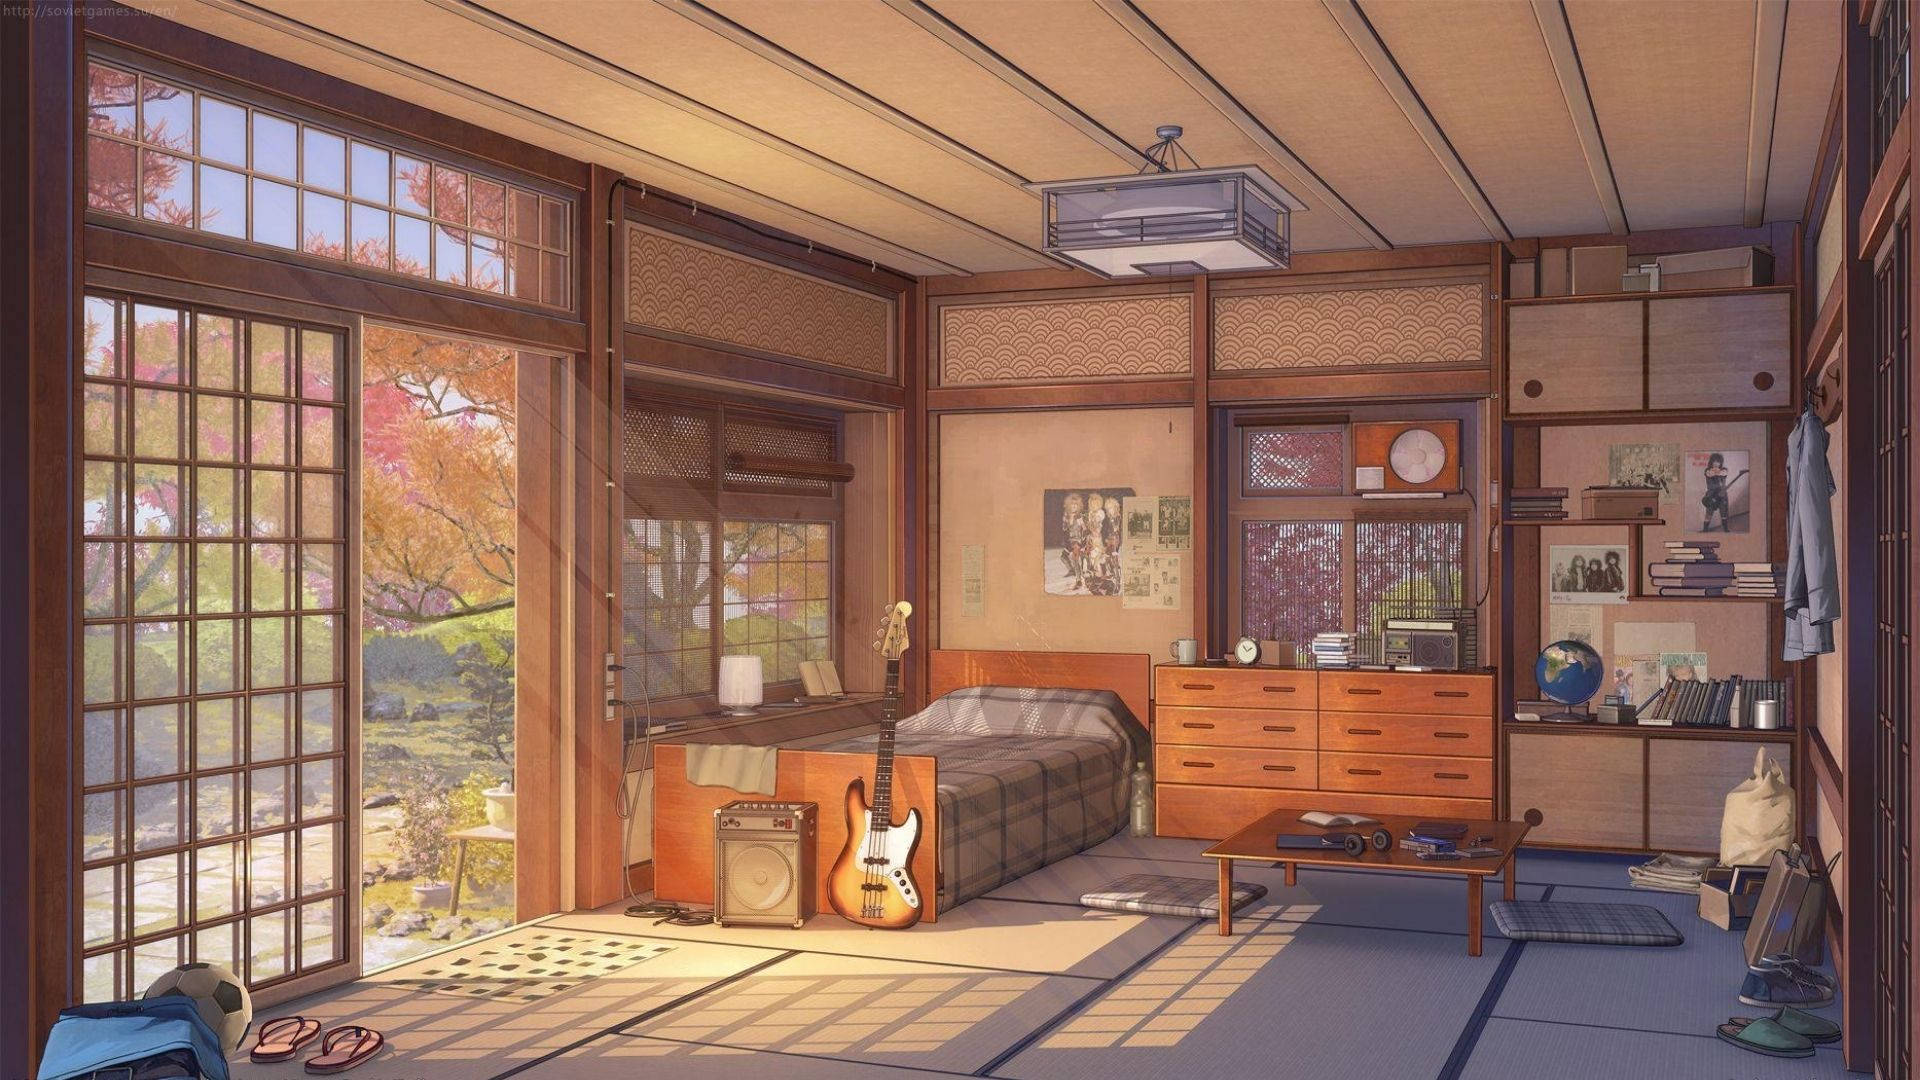 Musician Anime Room Wallpaper